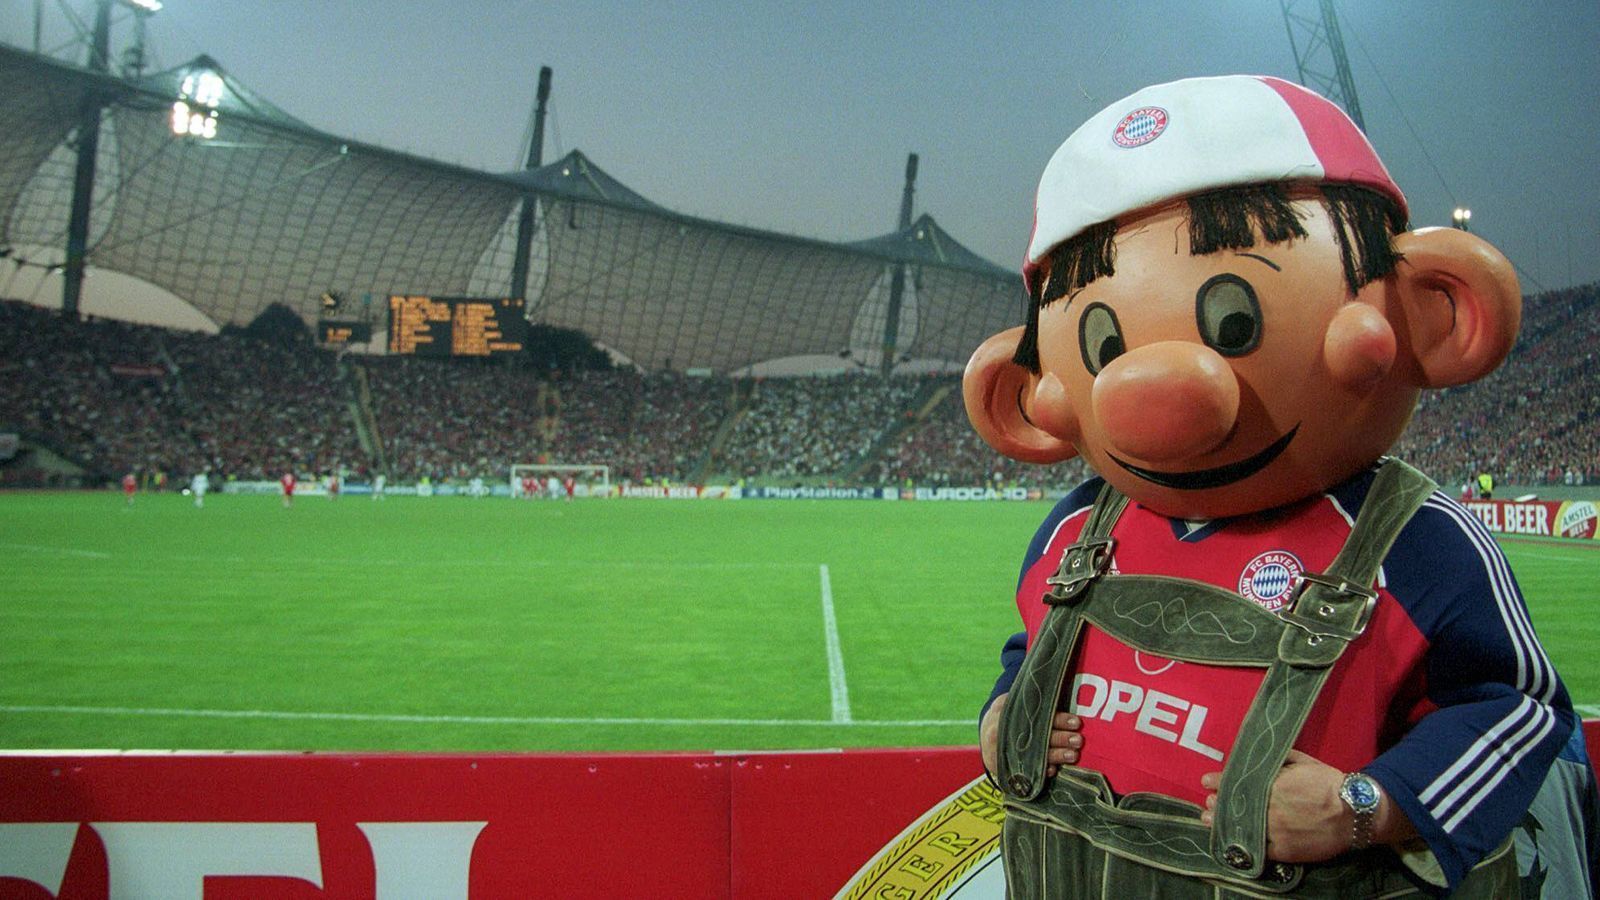 
                <strong>FC Bayern München: Die Maskottchen im Wandel der Zeit</strong><br>
                Bazi im alten Olympiastadion. Es scheint ihm gut zu gehen, auch wenn die Beulen im Gesicht eigentlich Anlass zur Sorge bereiten sollten.
              